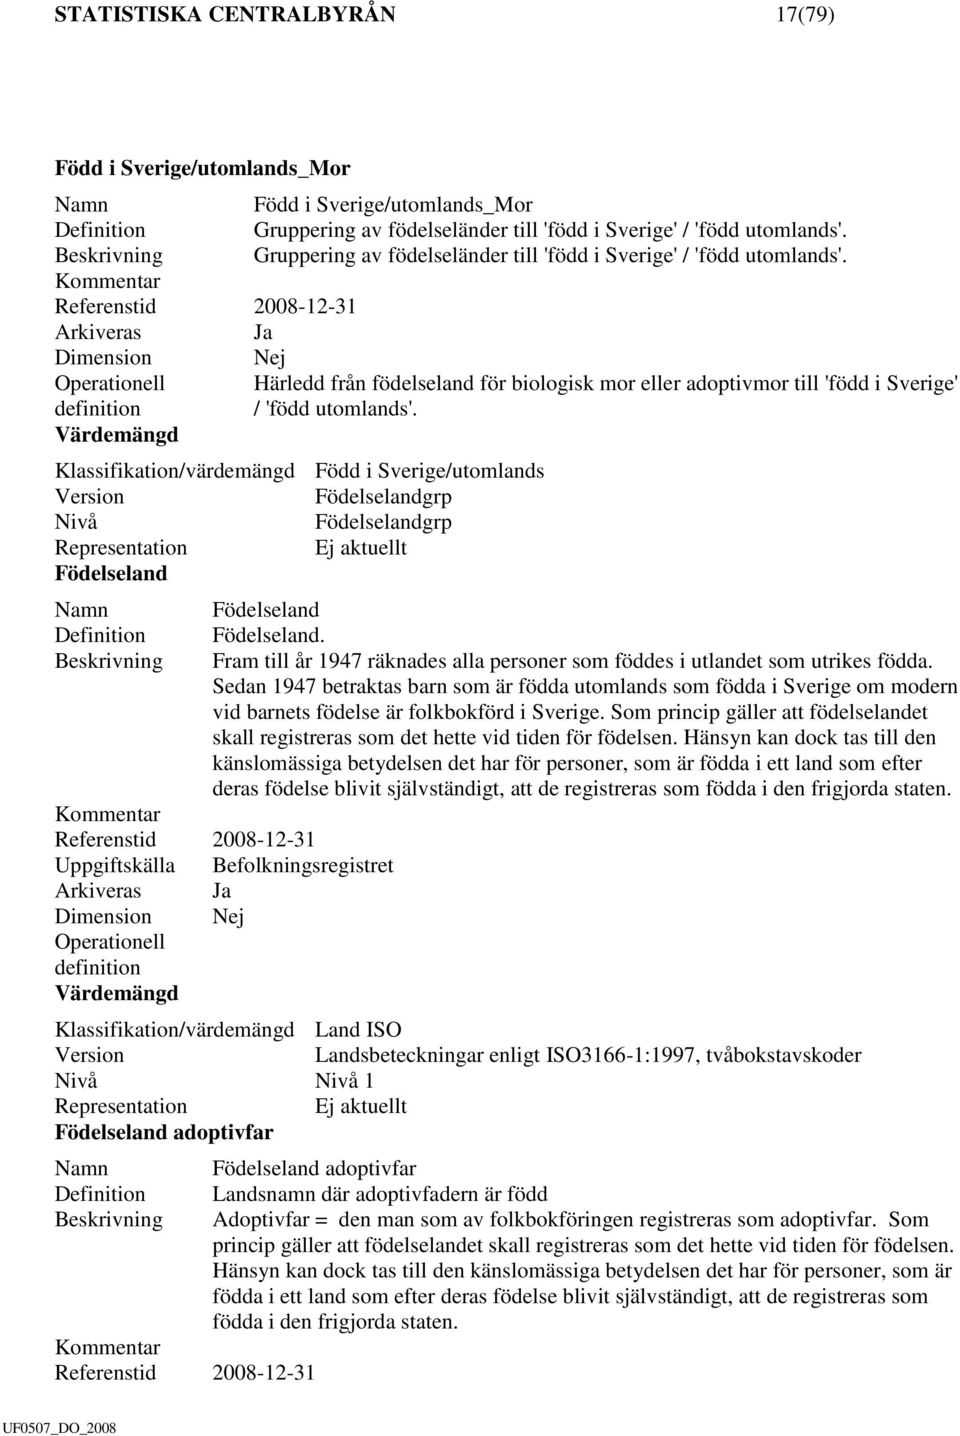 Referenstid 2008-12-31 Arkiveras Ja Dimension Nej Operationell Härledd från födelseland för biologisk mor eller adoptivmor till 'född i Sverige' definition / 'född utomlands'.